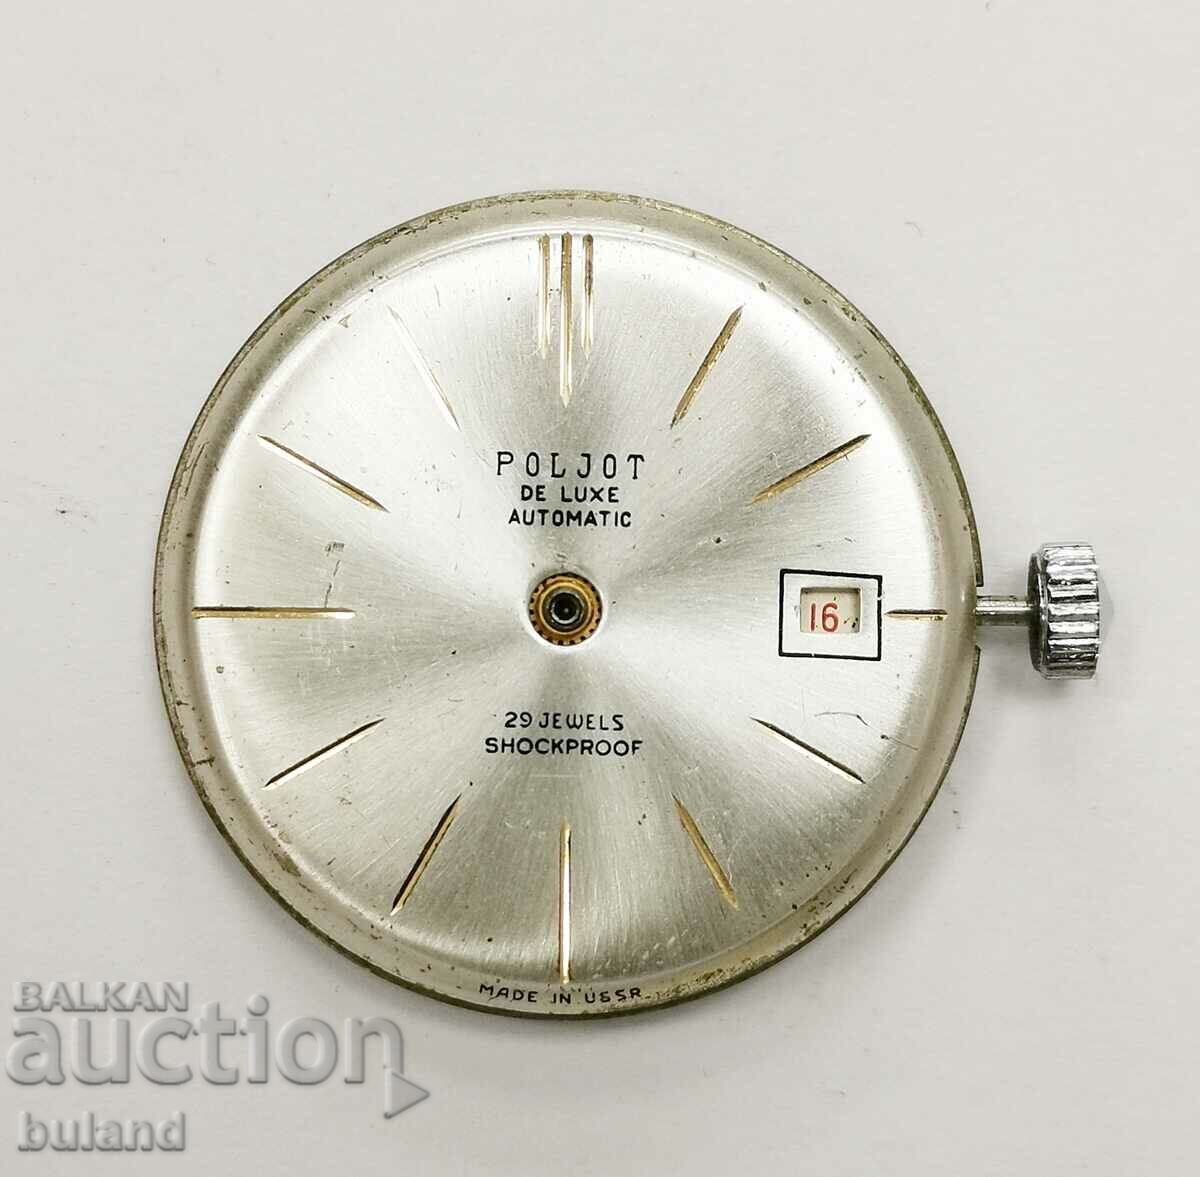 Σοβιετικός Μηχανισμός Polet de Luxe 2416 με 29 κοσμήματα Automatic